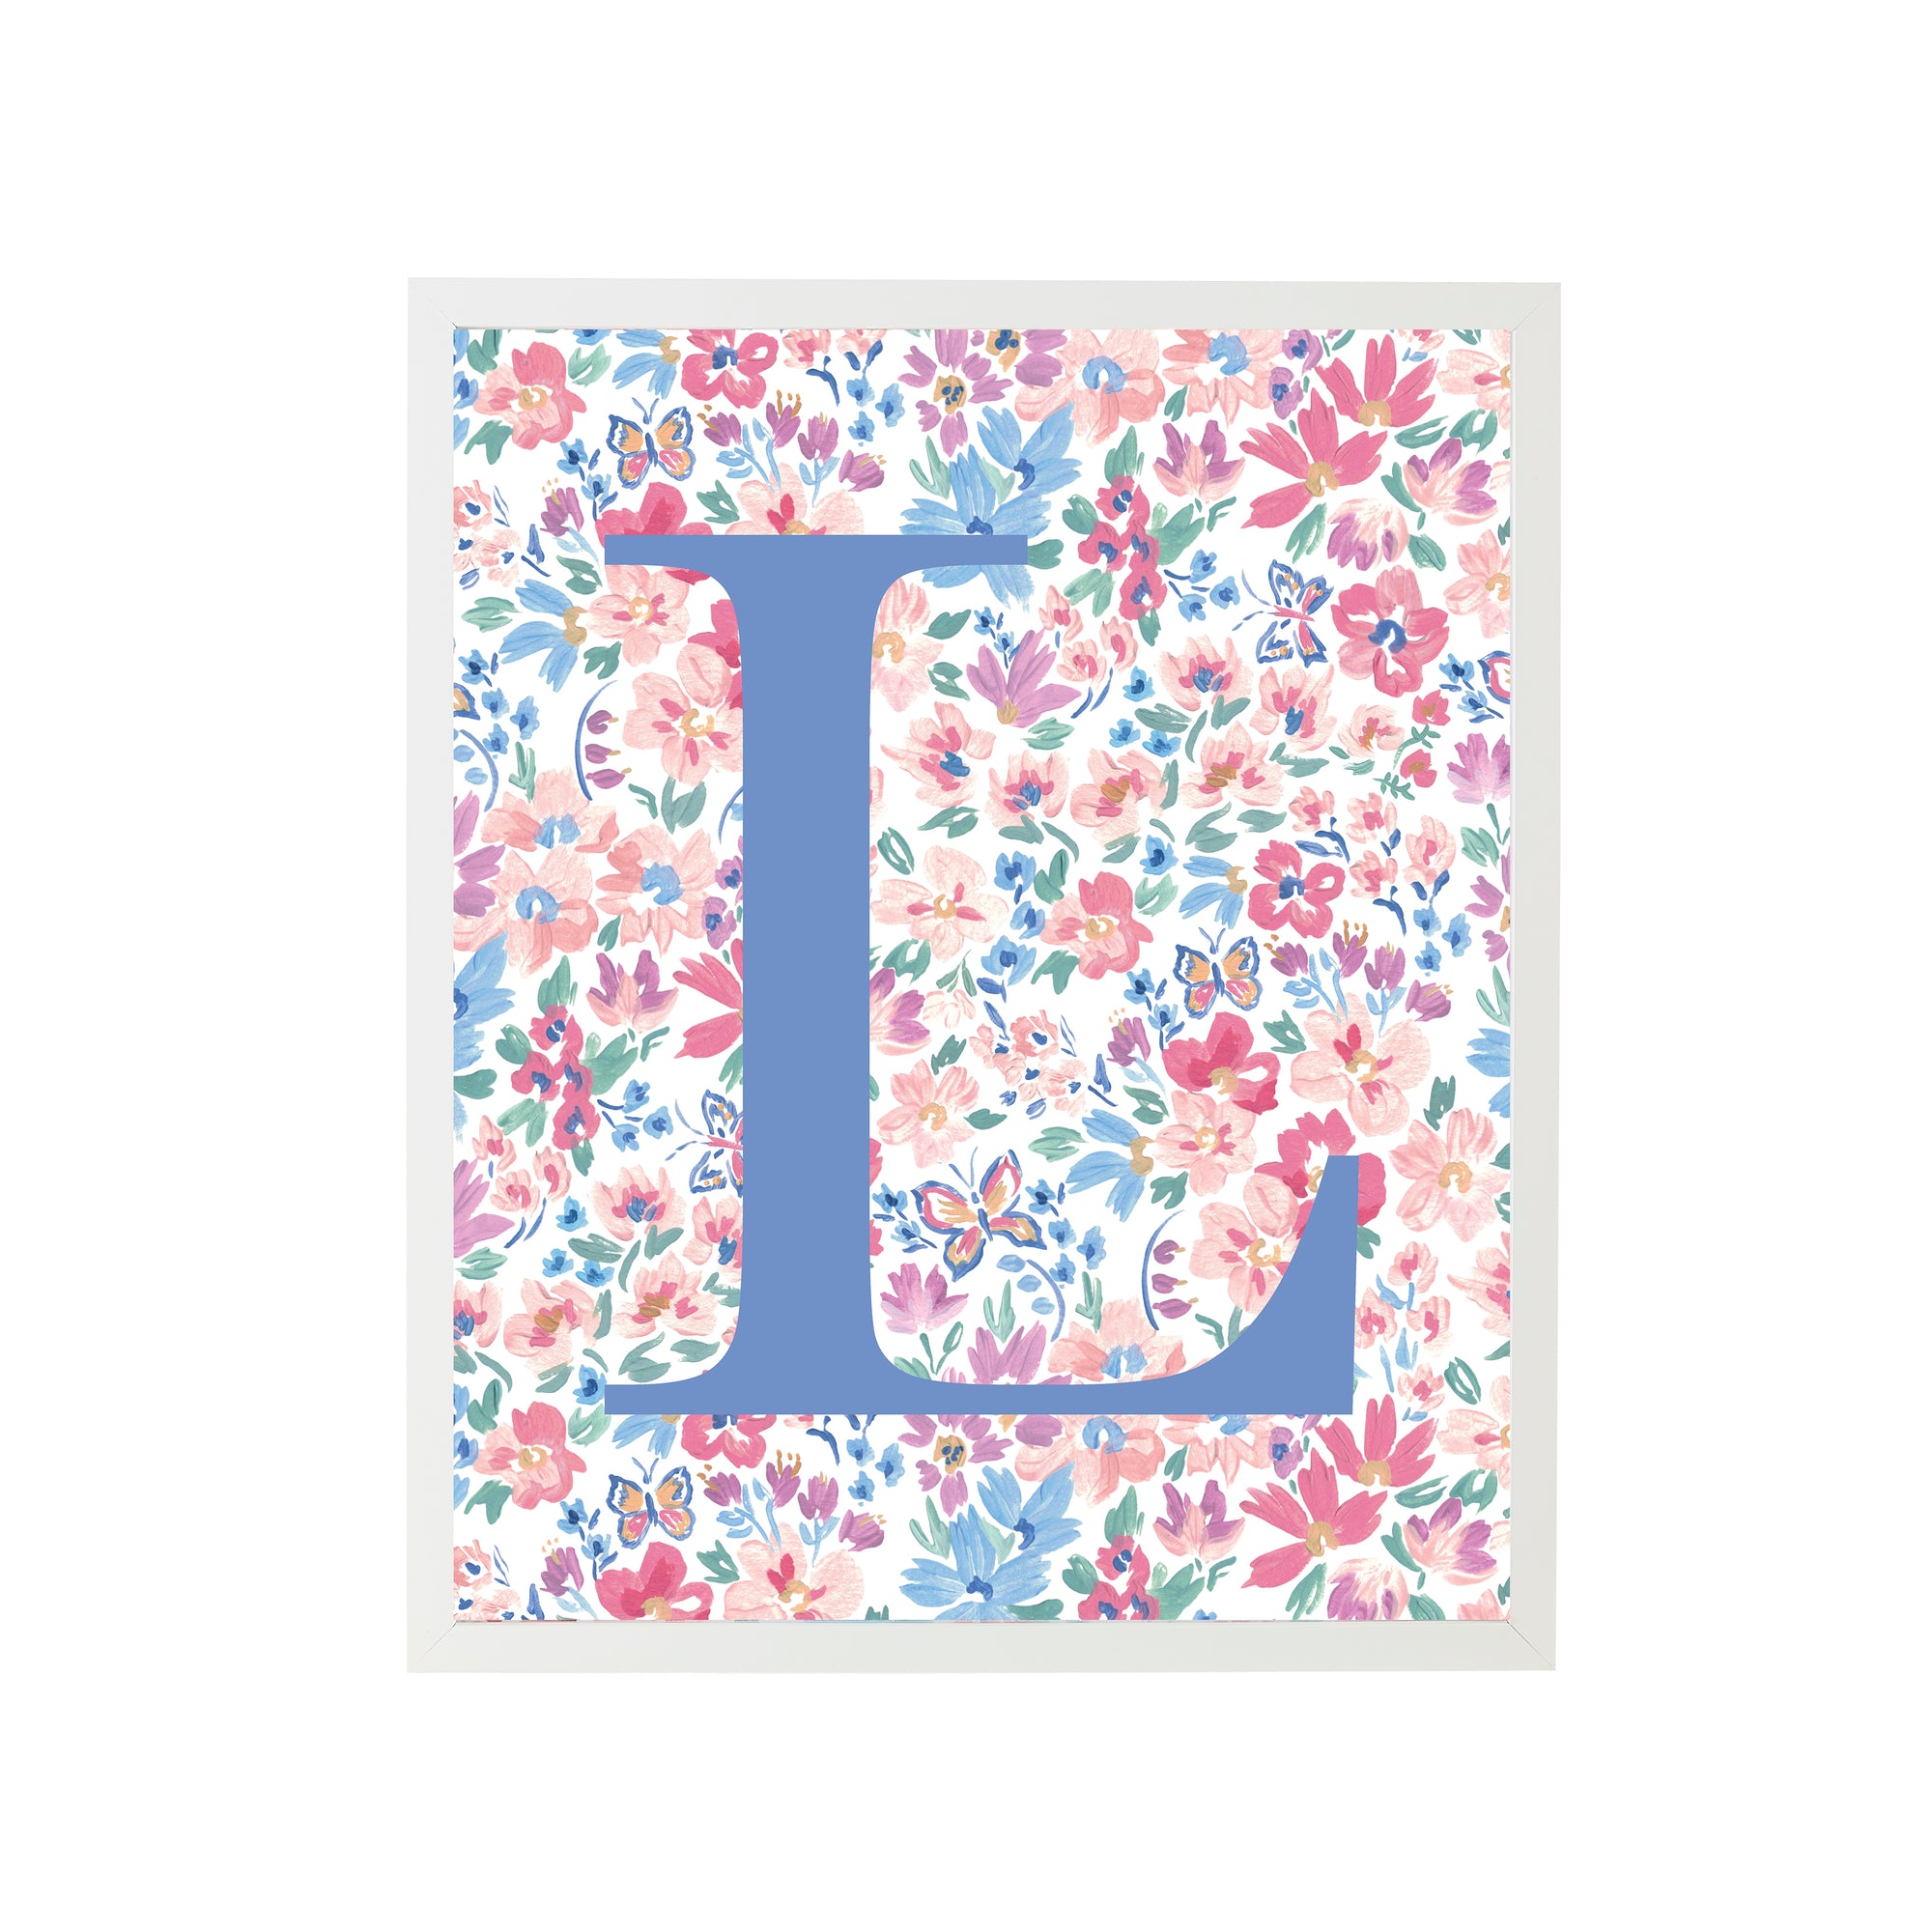 Framed "L" Butterfly Garden Letter Art Print